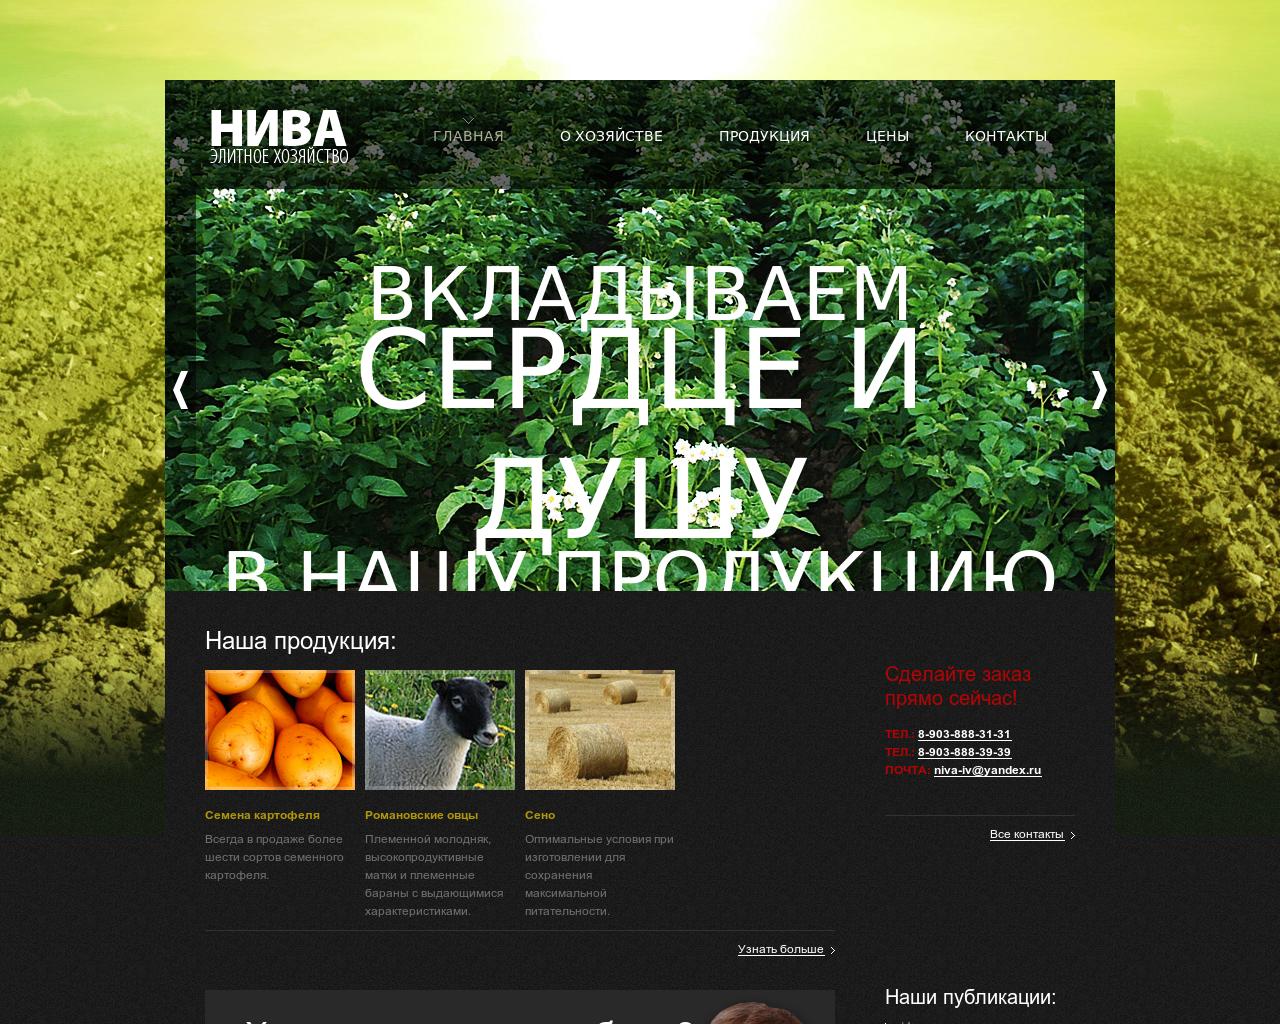 Изображение сайта niva-iv.ru в разрешении 1280x1024